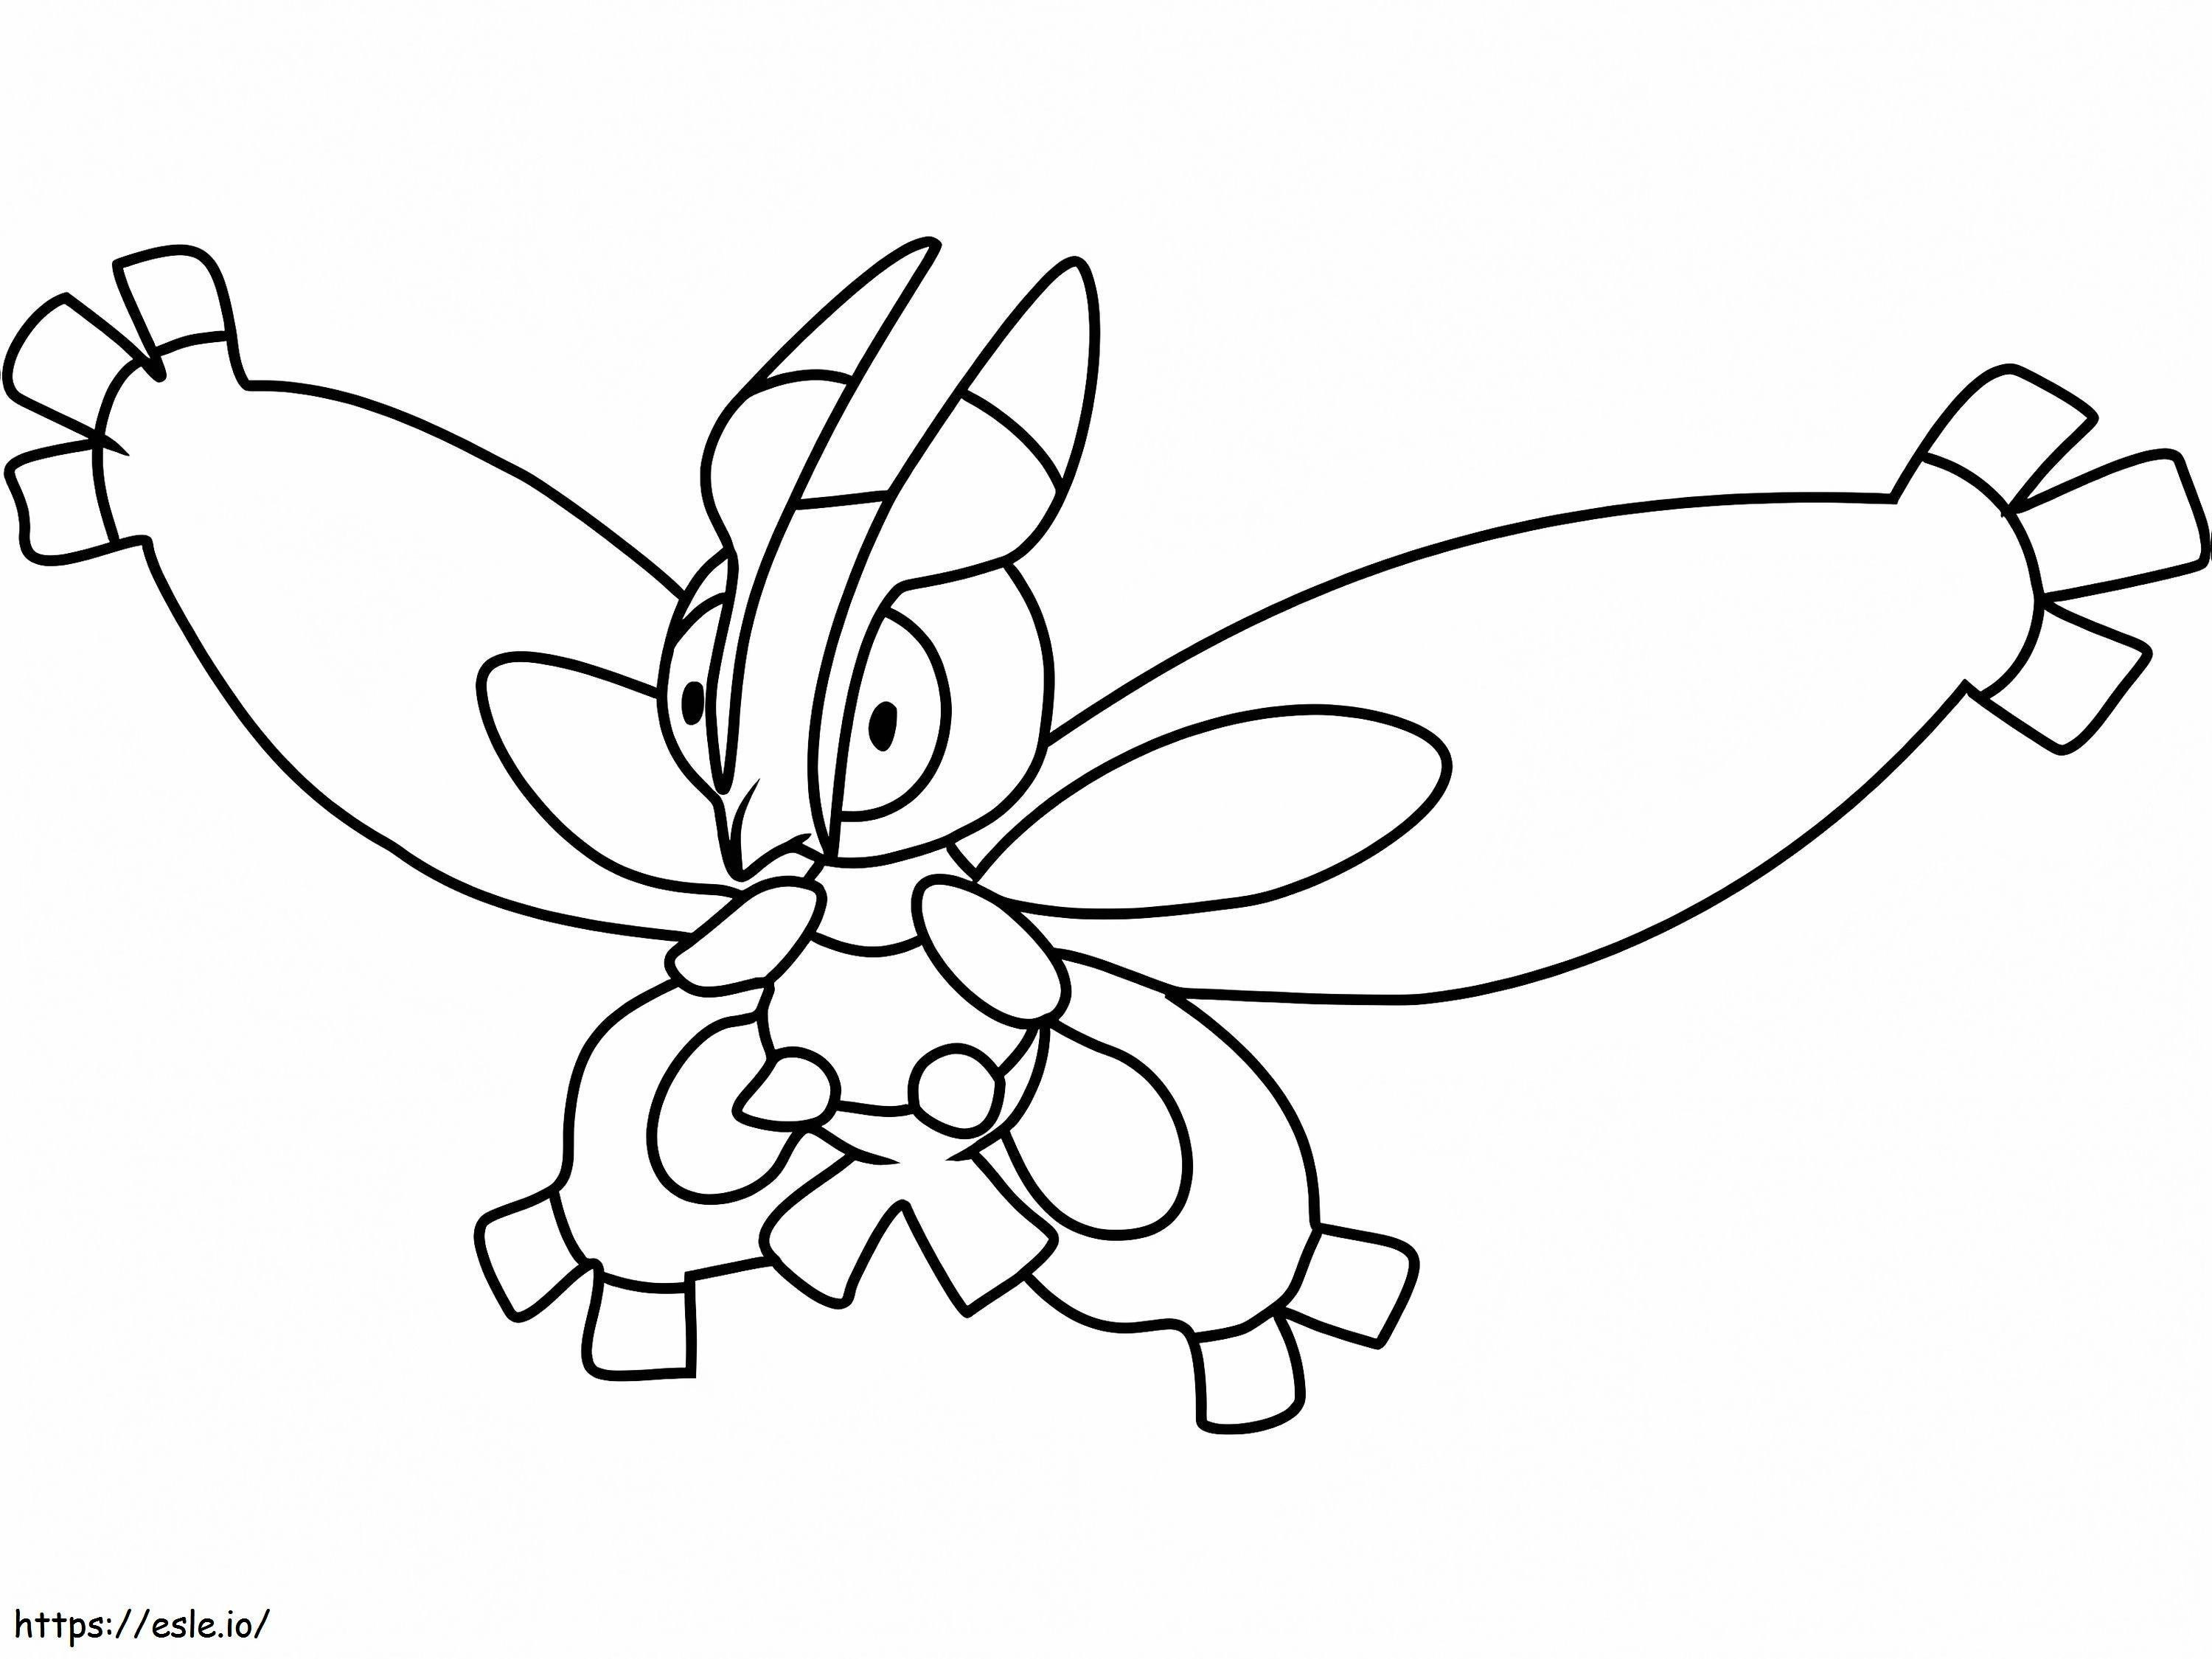 Pokémon Mothim geração 4 para colorir